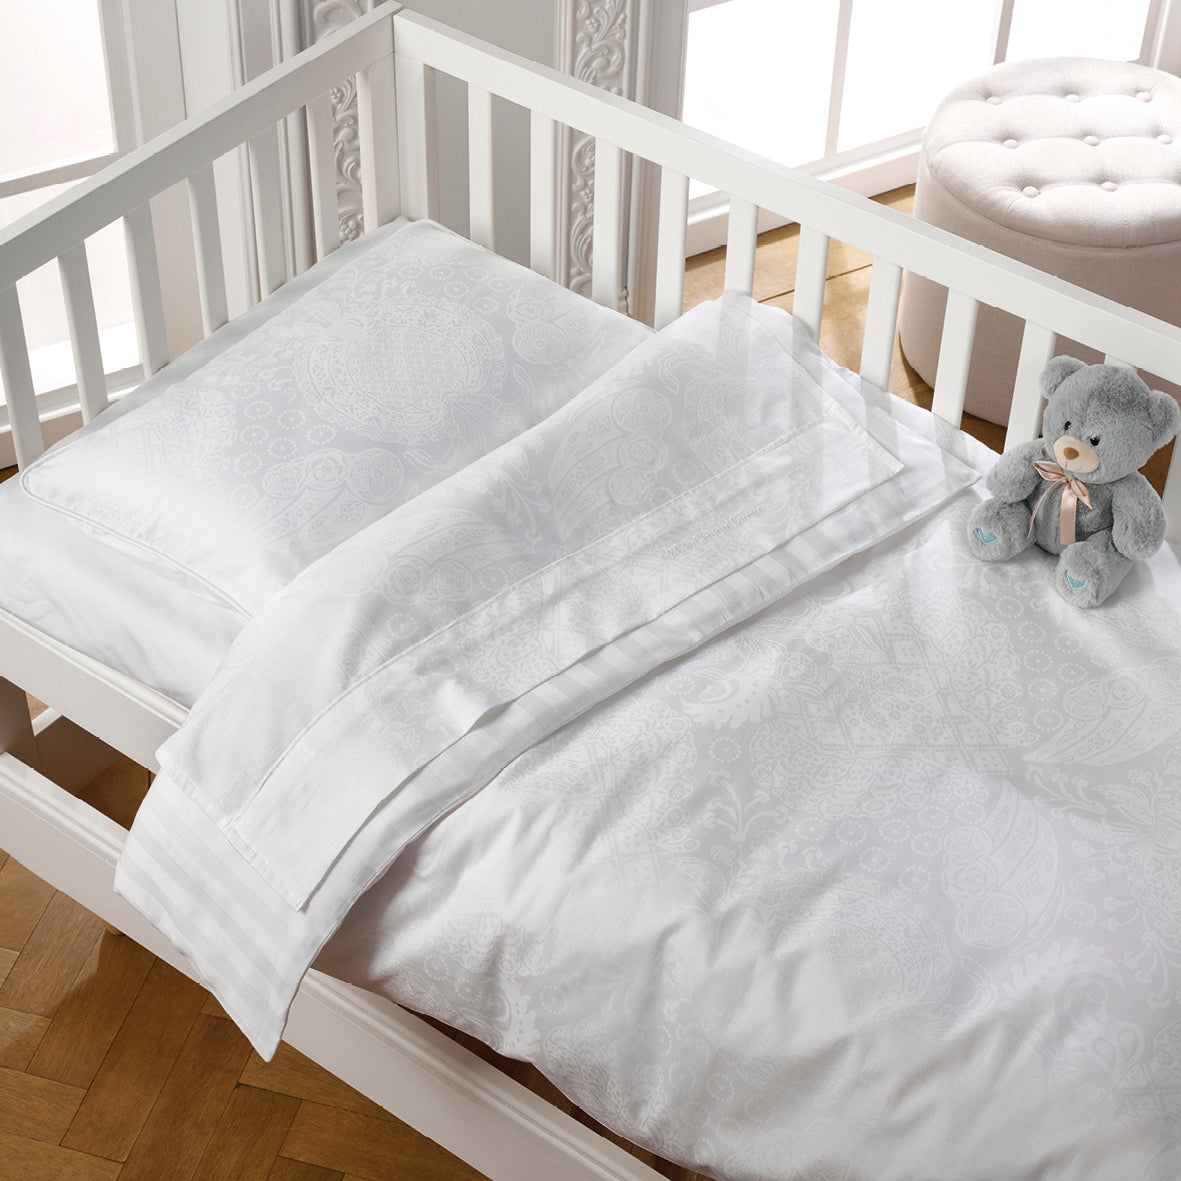 Couverture pour le bébé - ultra doux en 100% satin de coton tissé Jacquard Arles Blanc - CXL by Christian Lacroix Maison